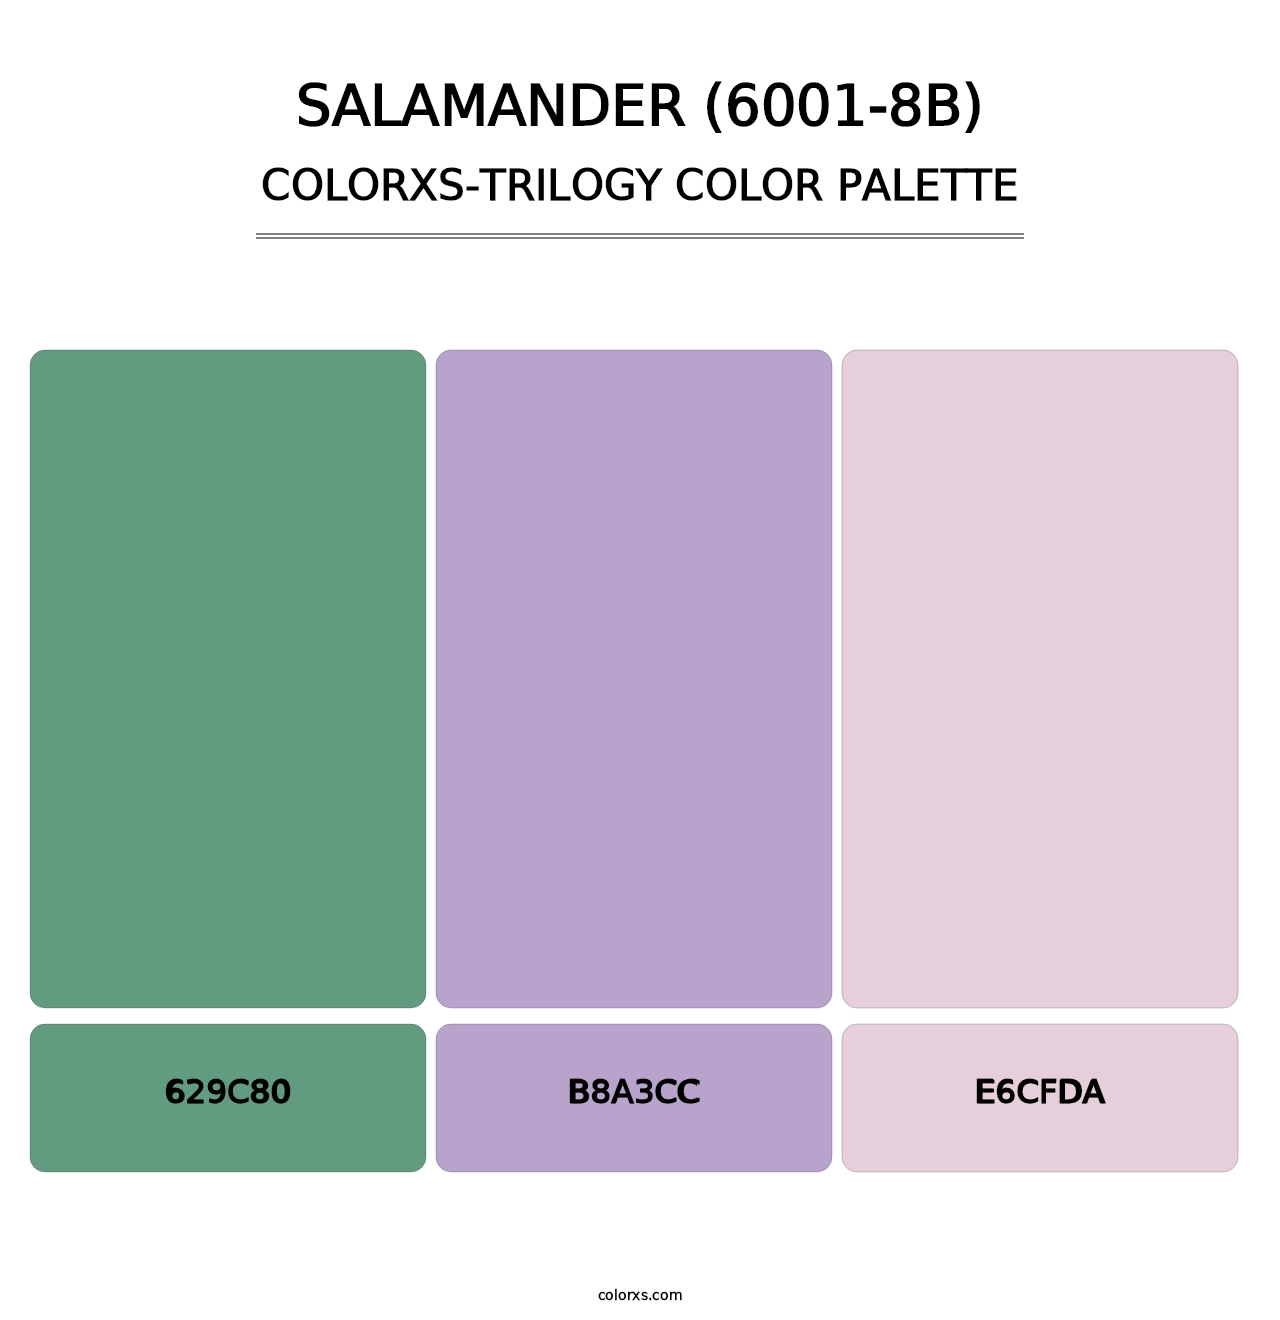 Salamander (6001-8B) - Colorxs Trilogy Palette